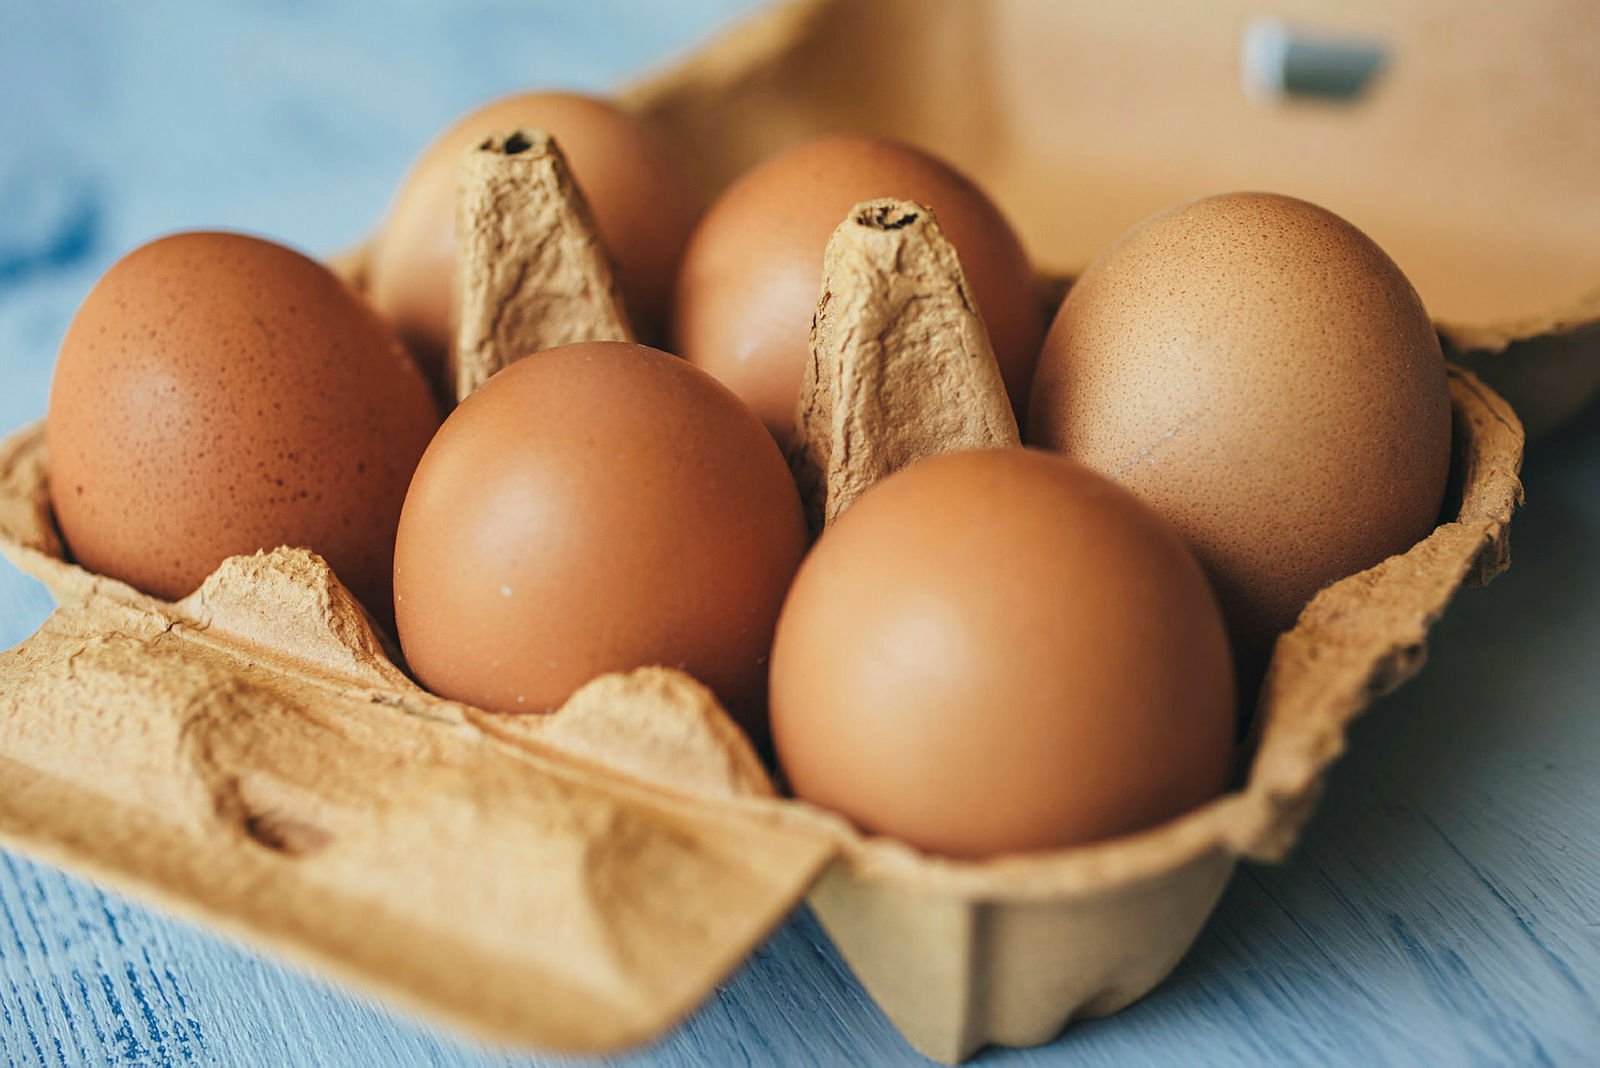 Los huevos frescos aportan mejor sabor, textura y apariencia a la Tarta Sara.